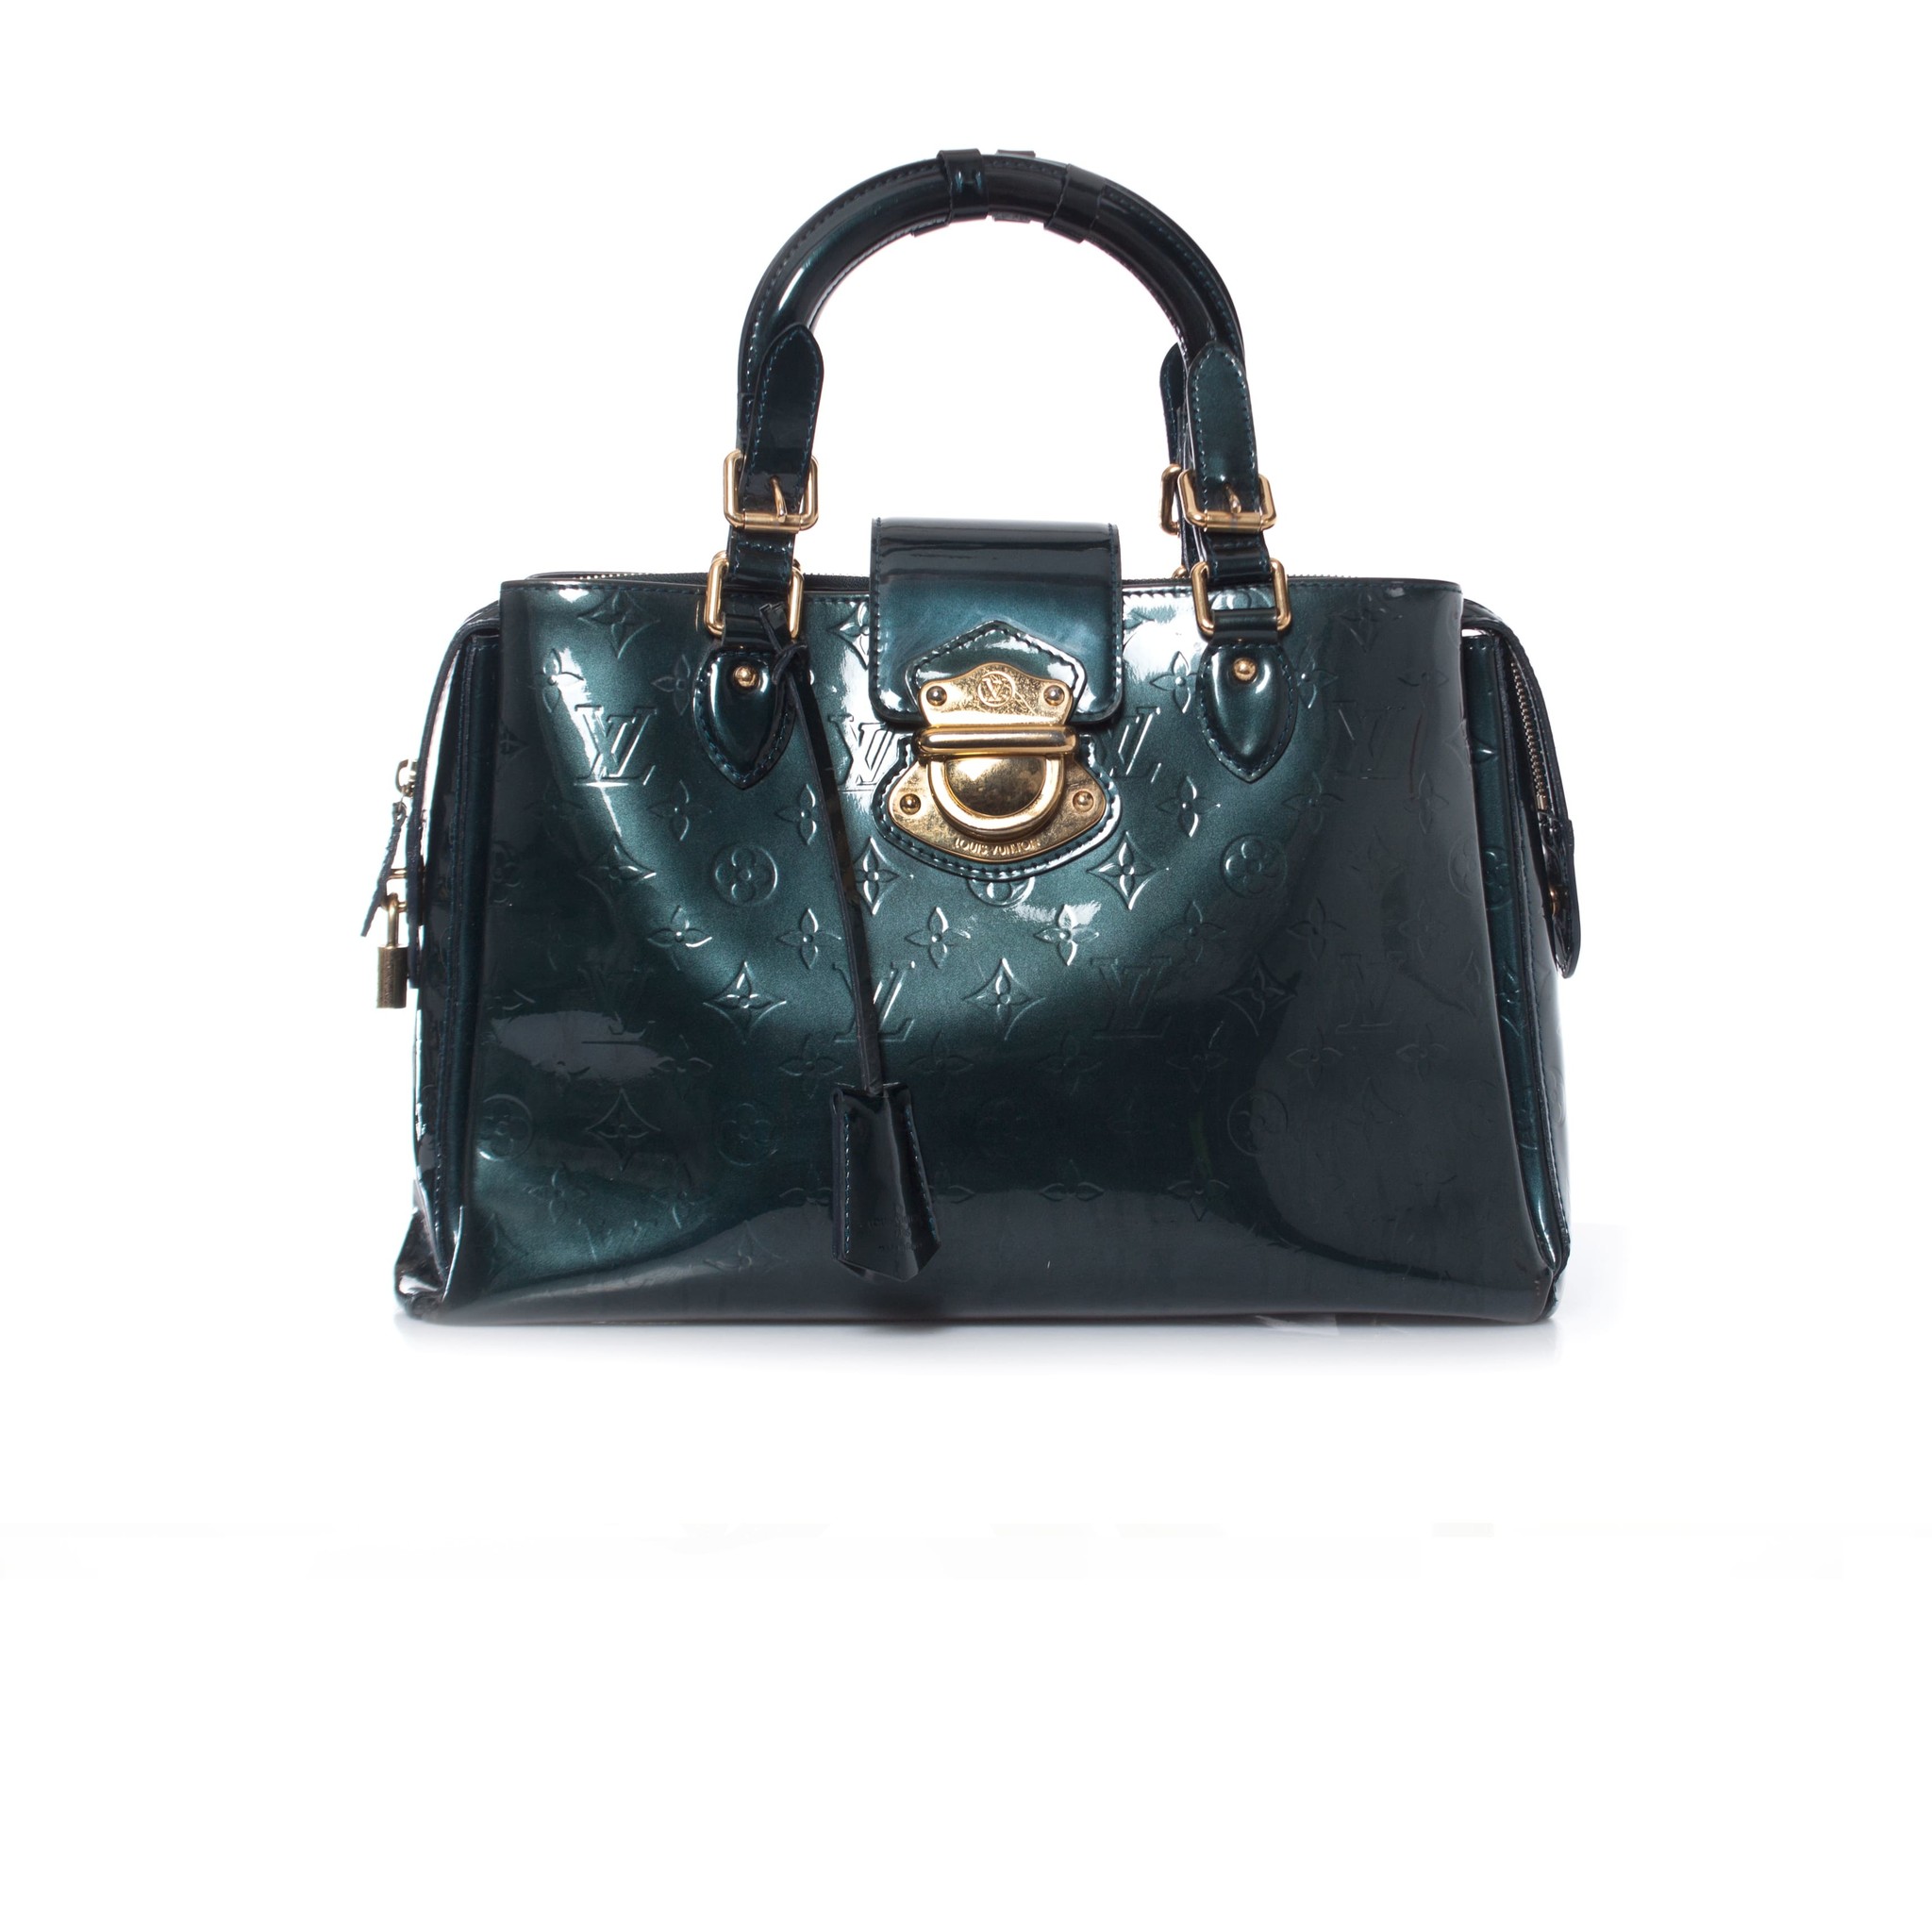 Louis Vuitton, Melrose Avenue Vernis bag - Unique Designer Pieces